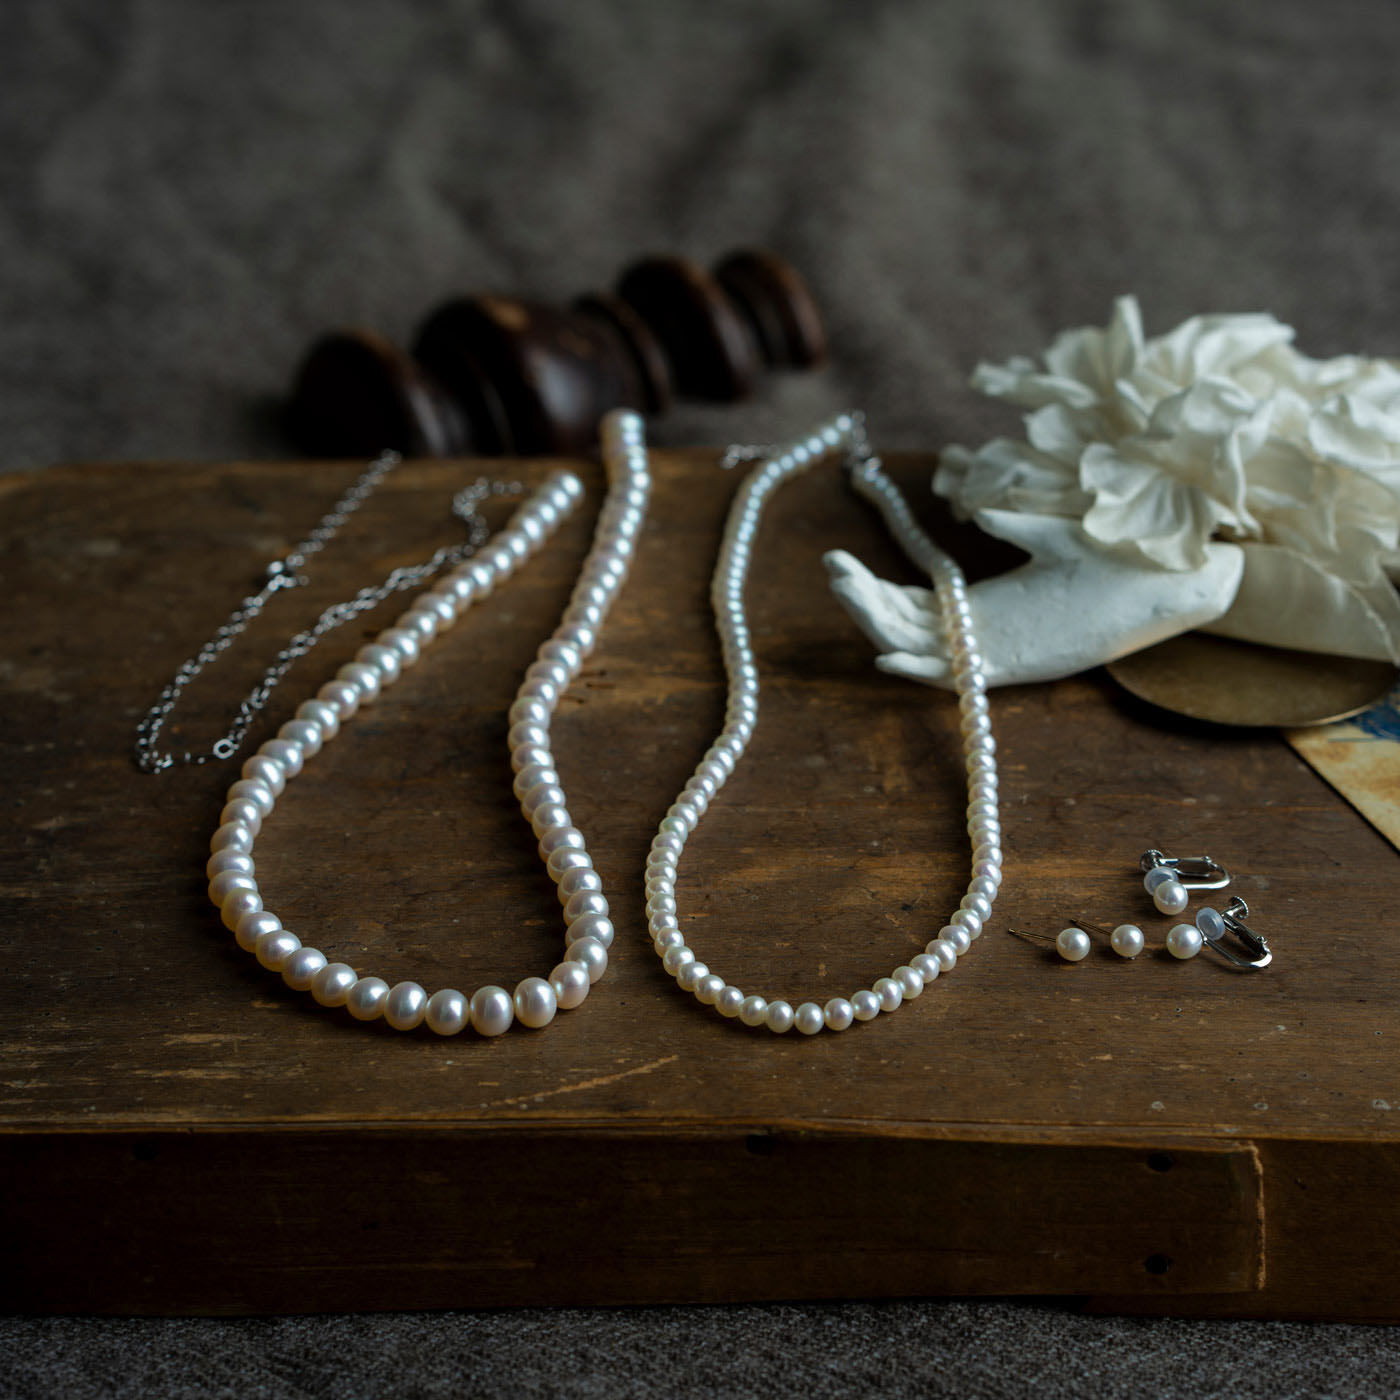 ＆Stories|神戸の老舗真珠メーカーが手掛けた 淡水パールのチェーンネックレス〈シルバー925〉|神戸の老舗真珠メーカーさんが用意してくれた貴重なパールアクセ達。大人のお洒落を楽しめるモノばかりです。